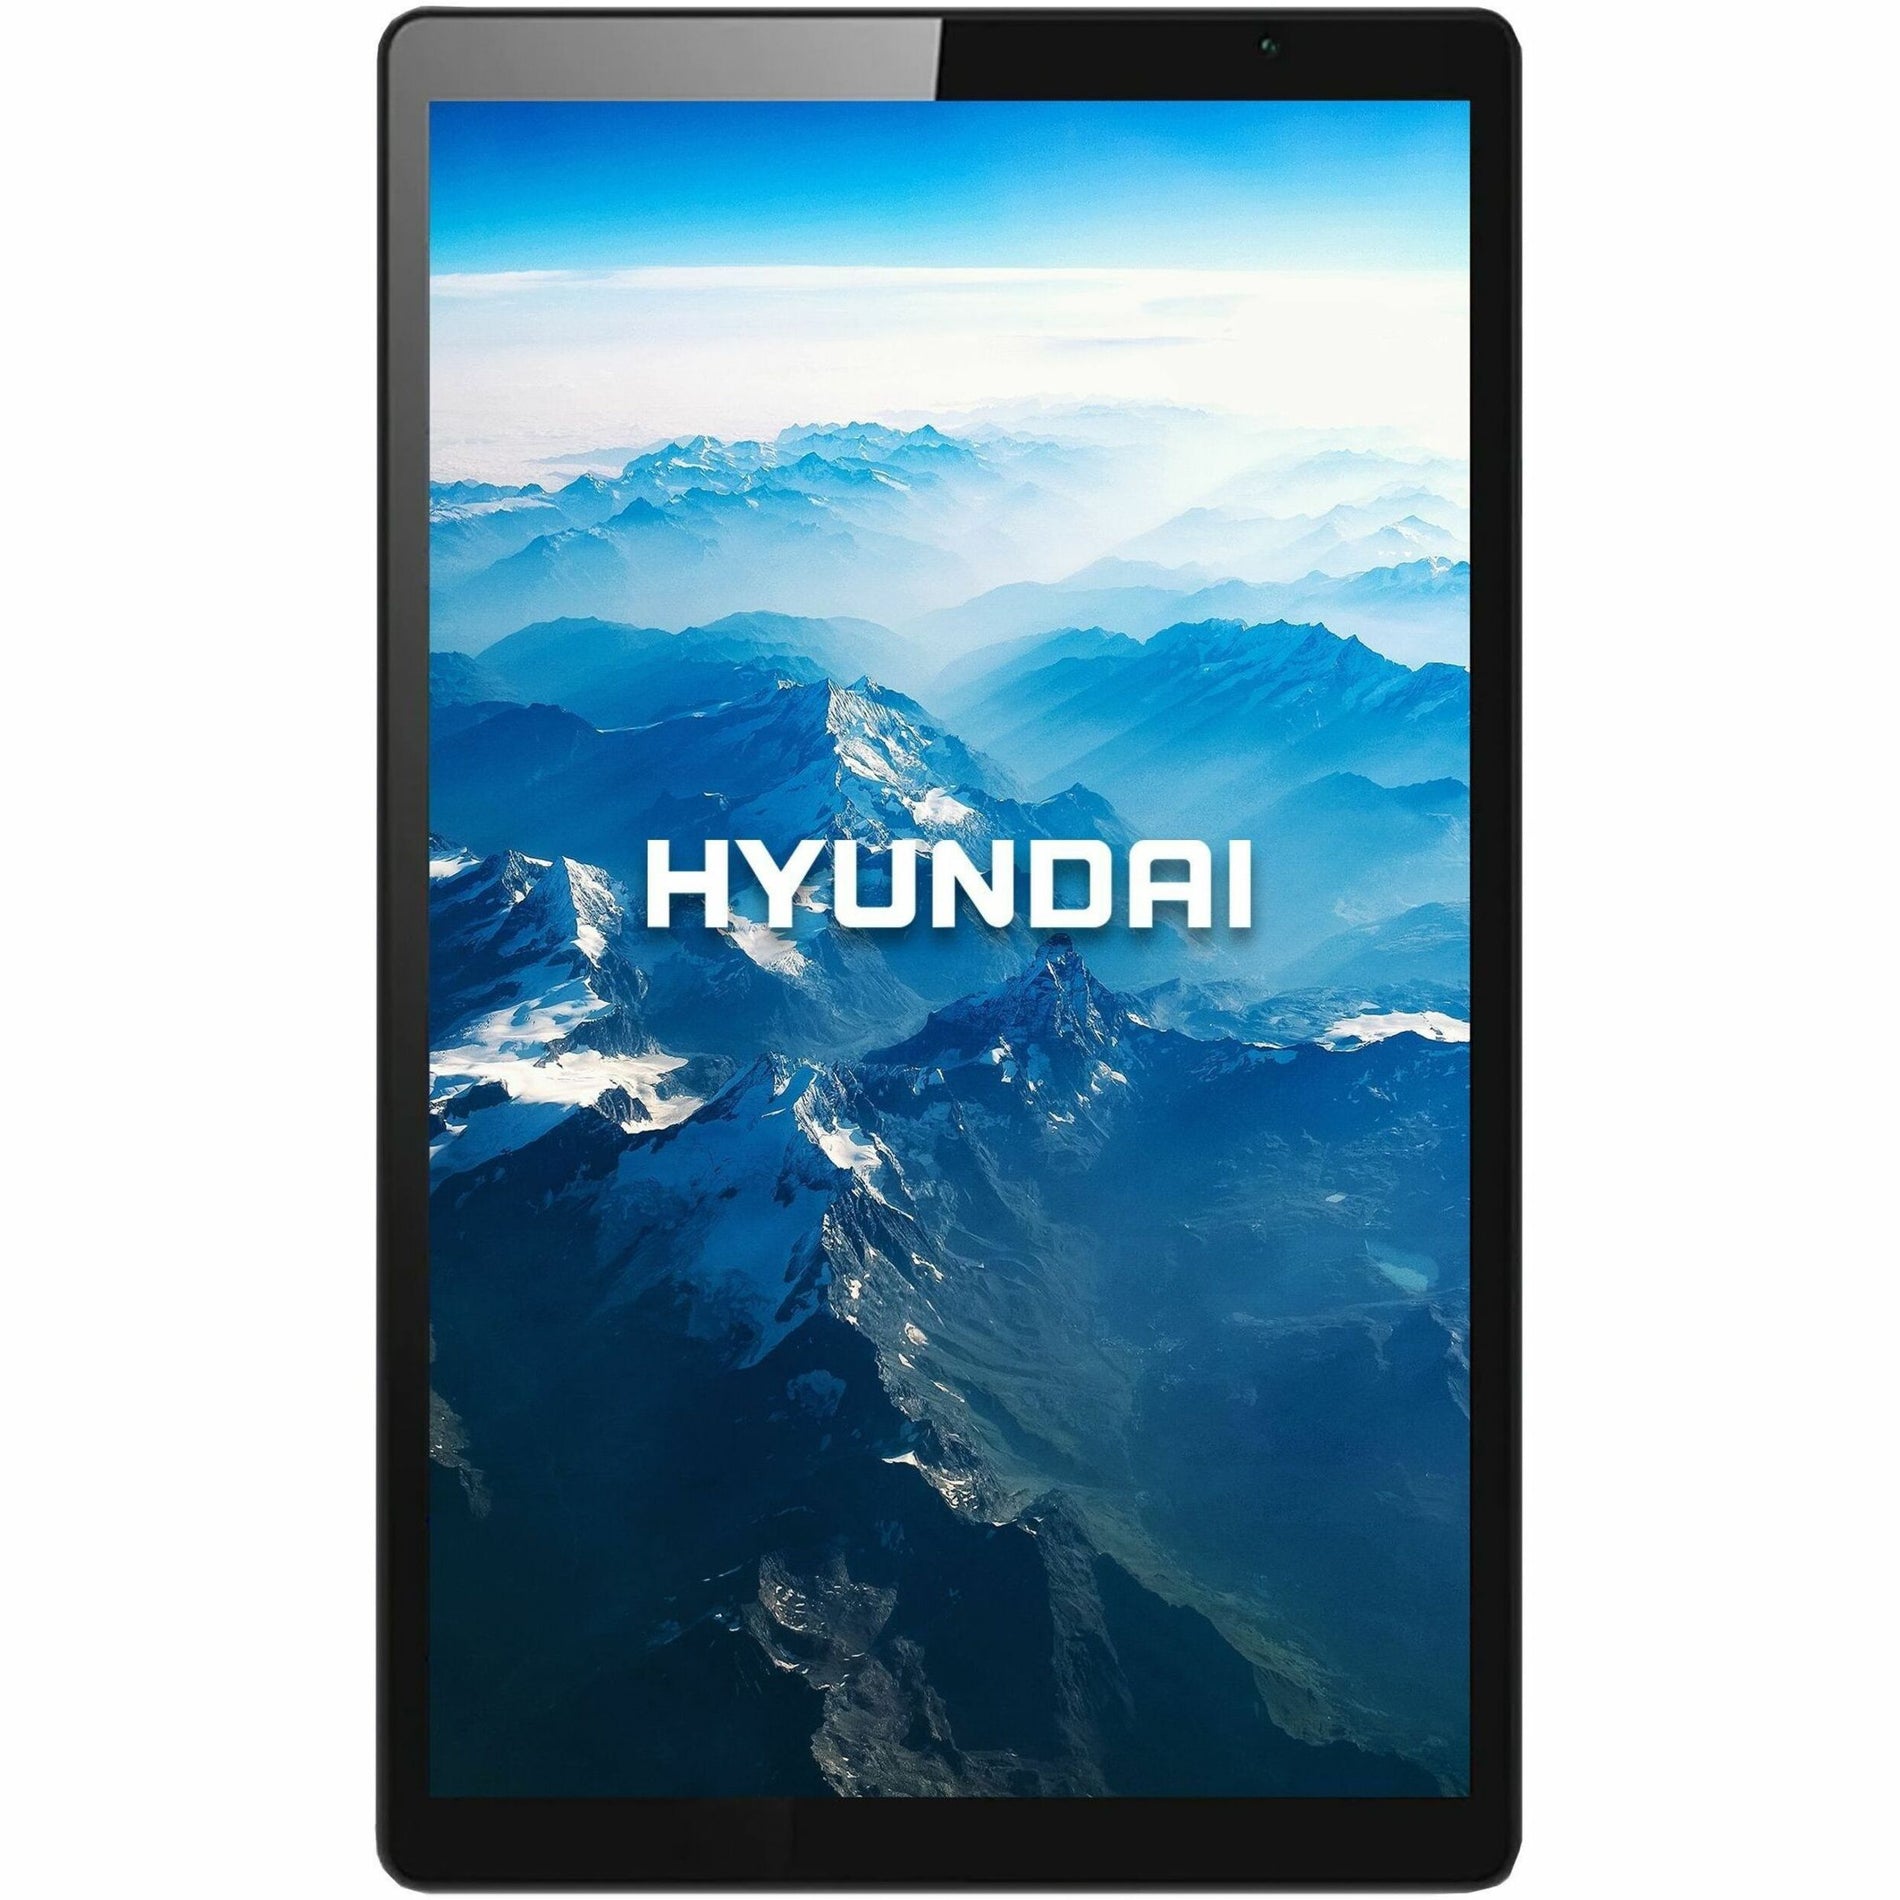 Hyundai (HT10WB2MSG02) Tablets